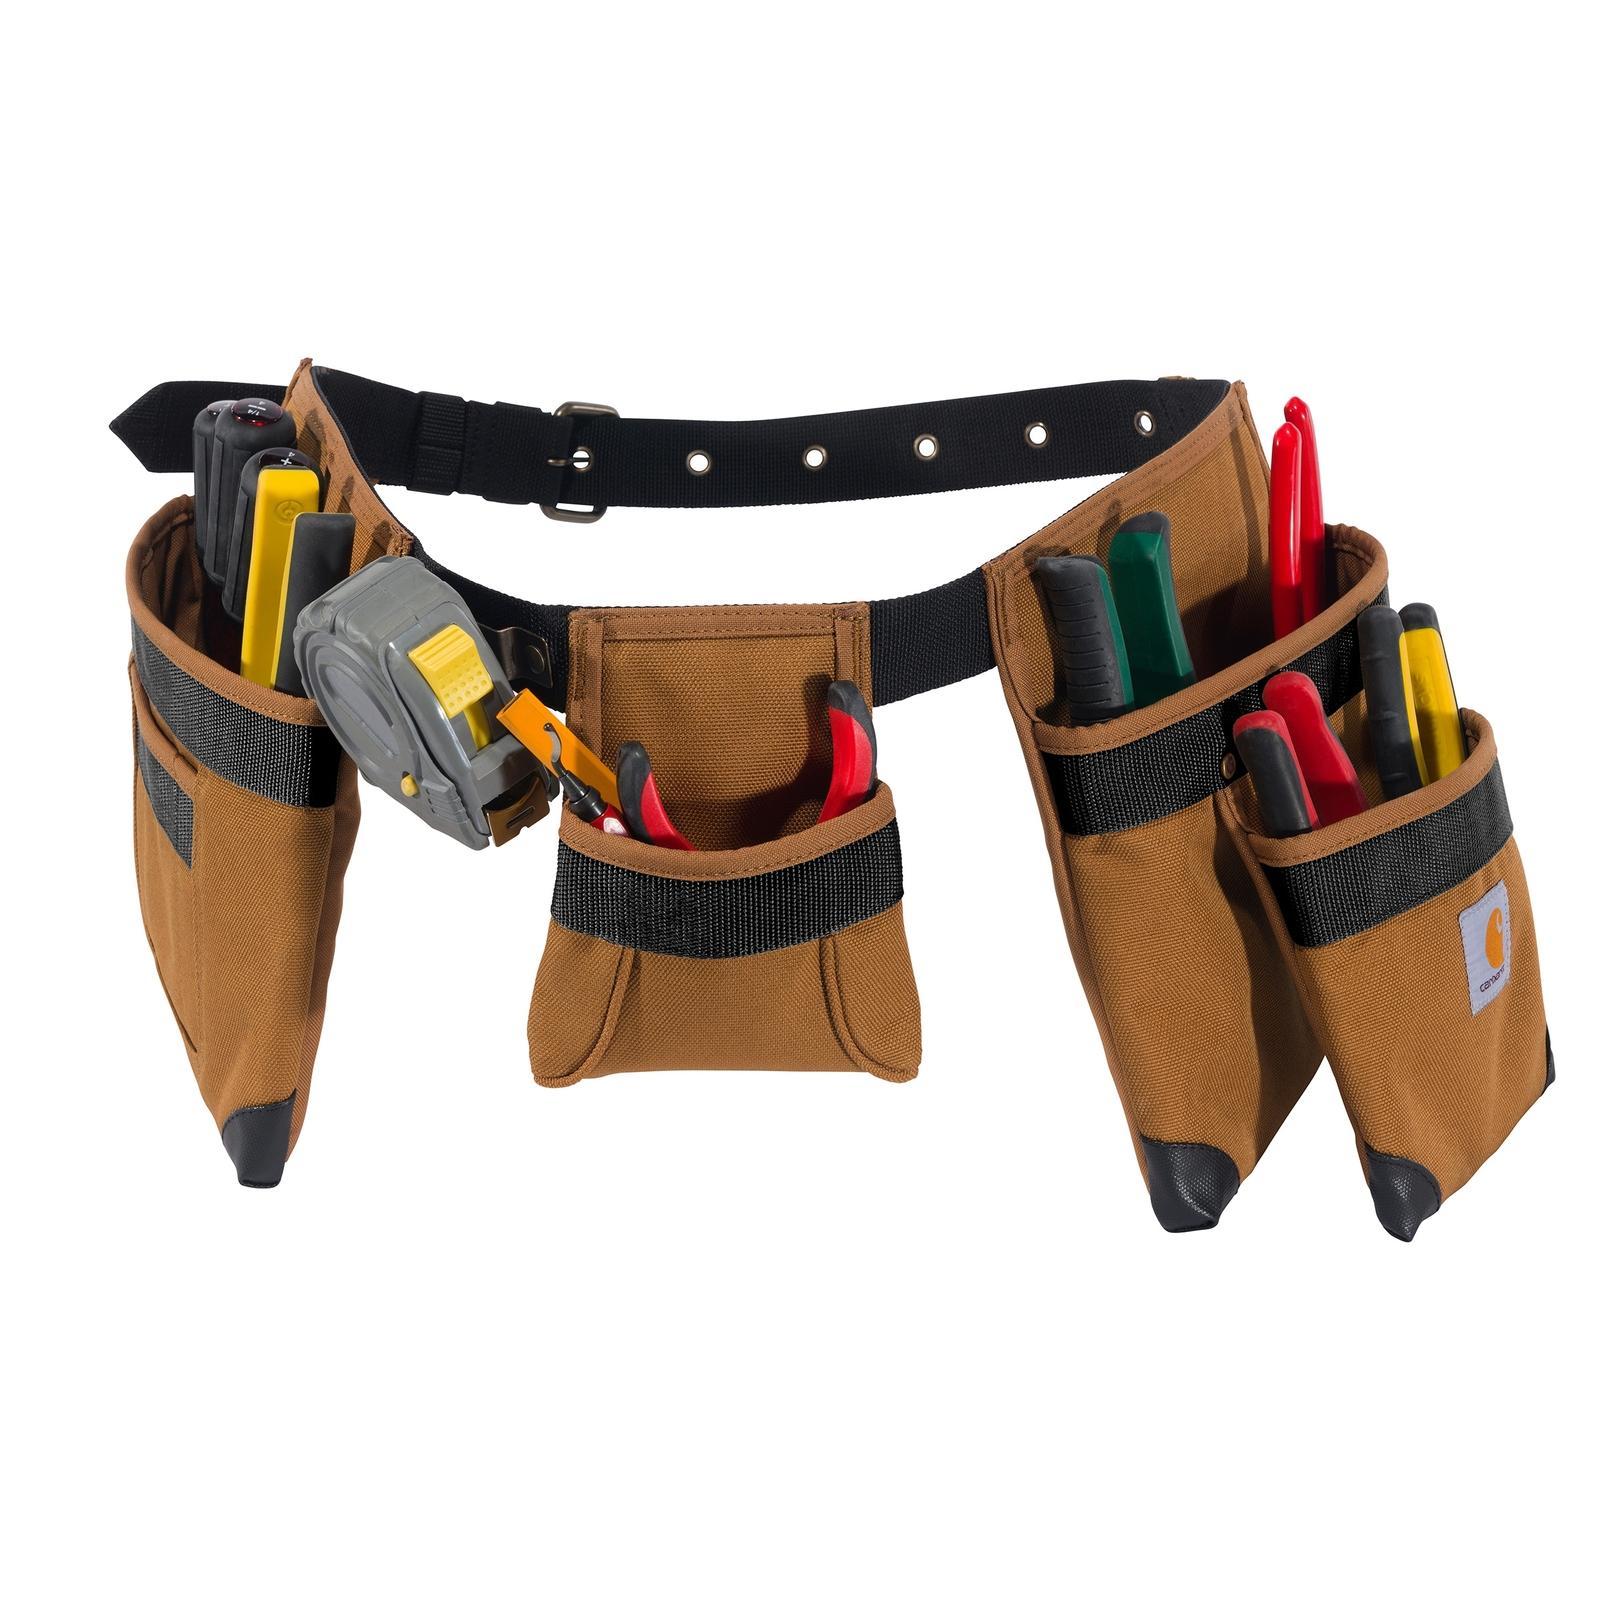 Carhartt 7-Pocket Tool Belt